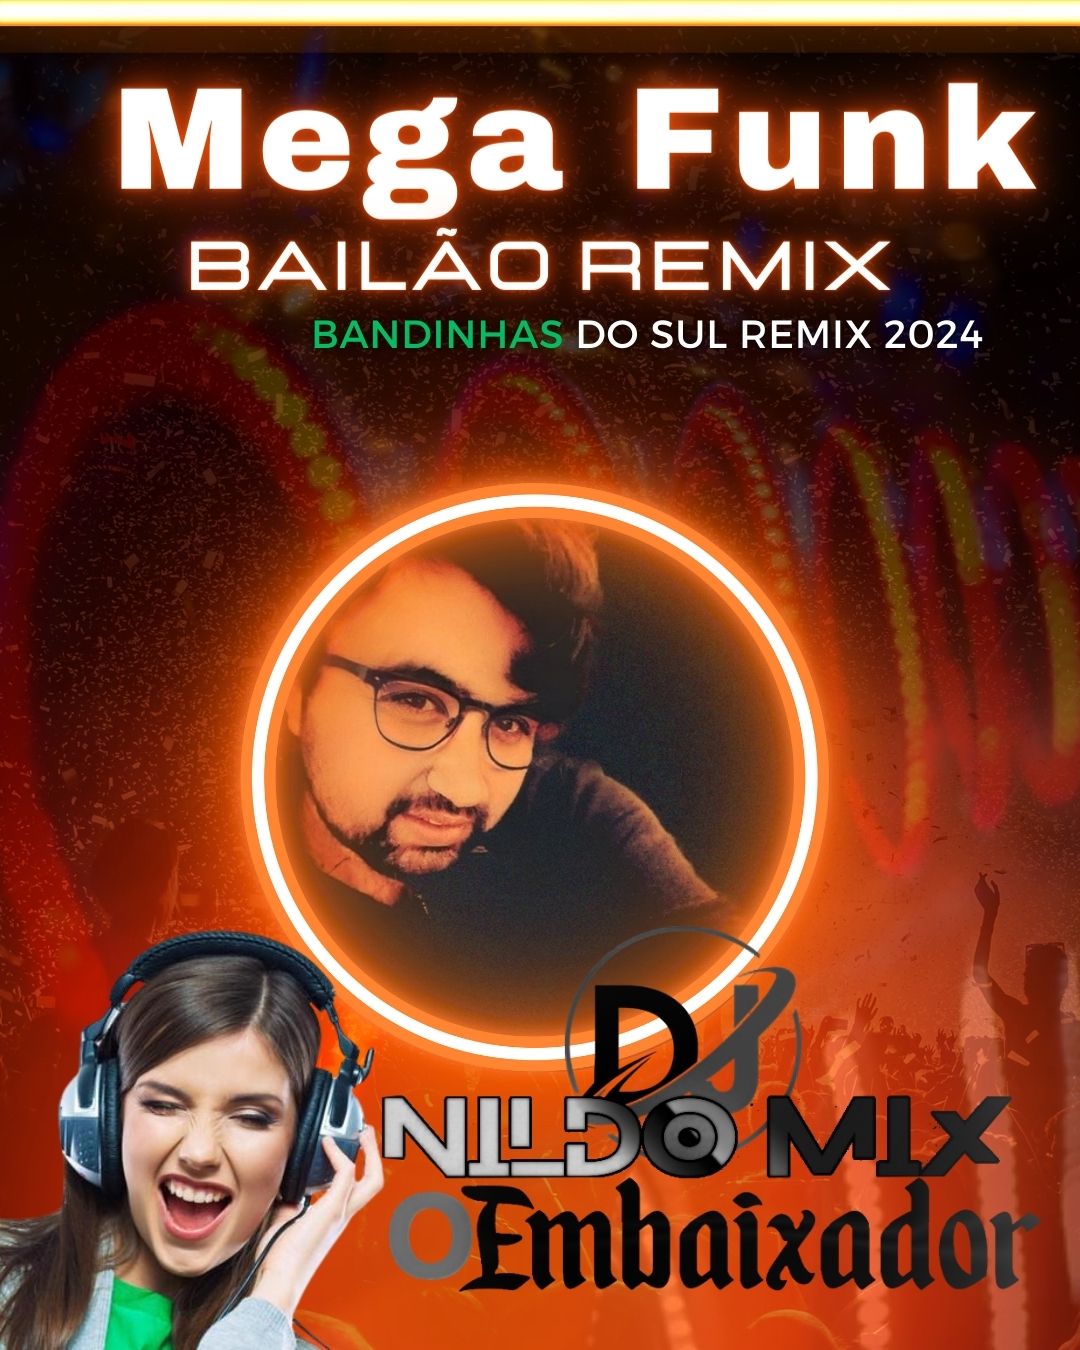 Mega Funk Bailão Remix Dj Nildo Mix o Embaixador E DJ Ari SL BANDINHAS DO SUL REMIX 2024